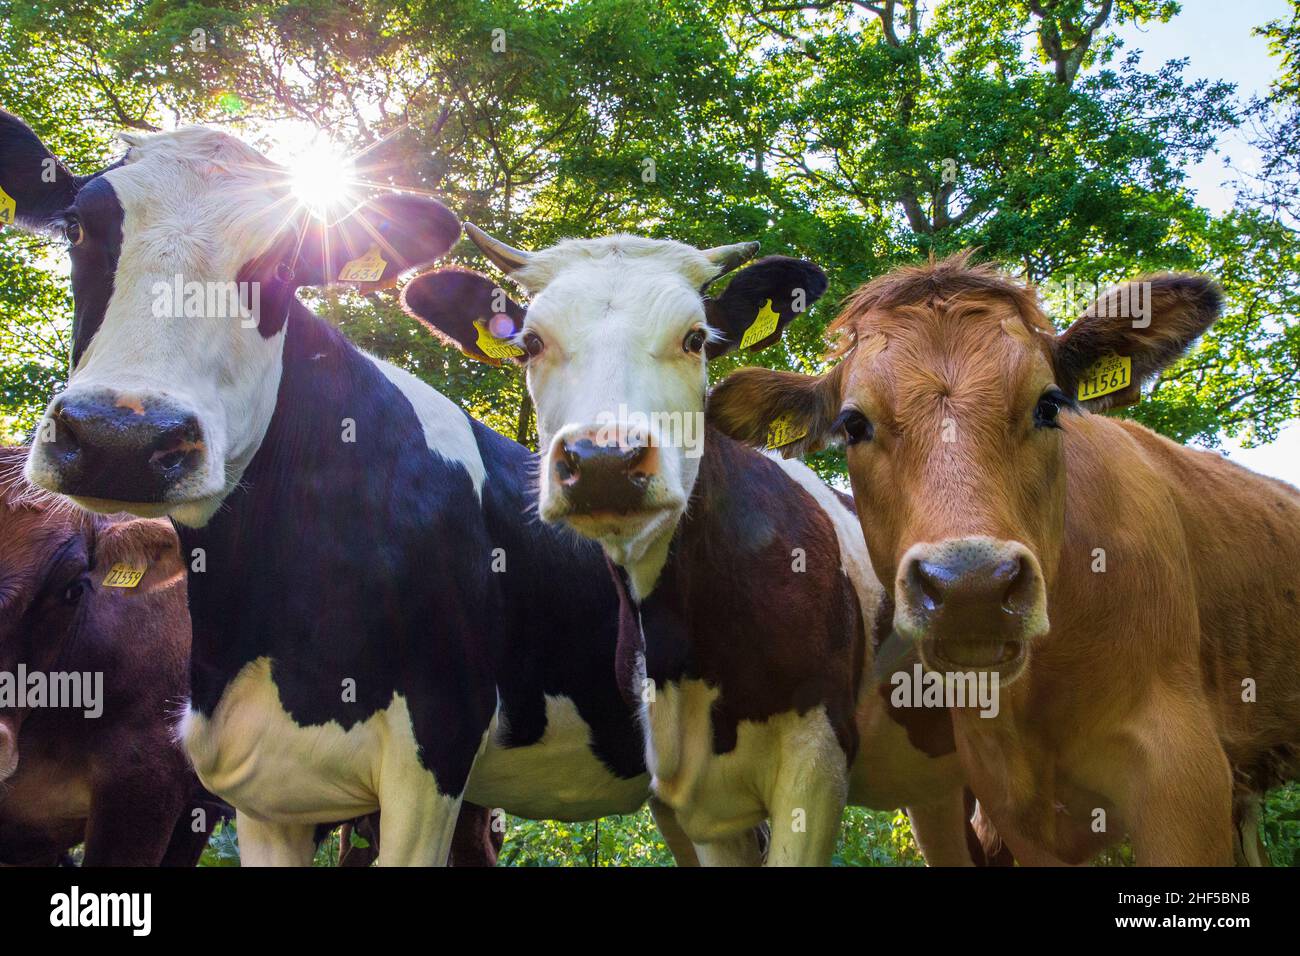 irish cattle Stock Photo